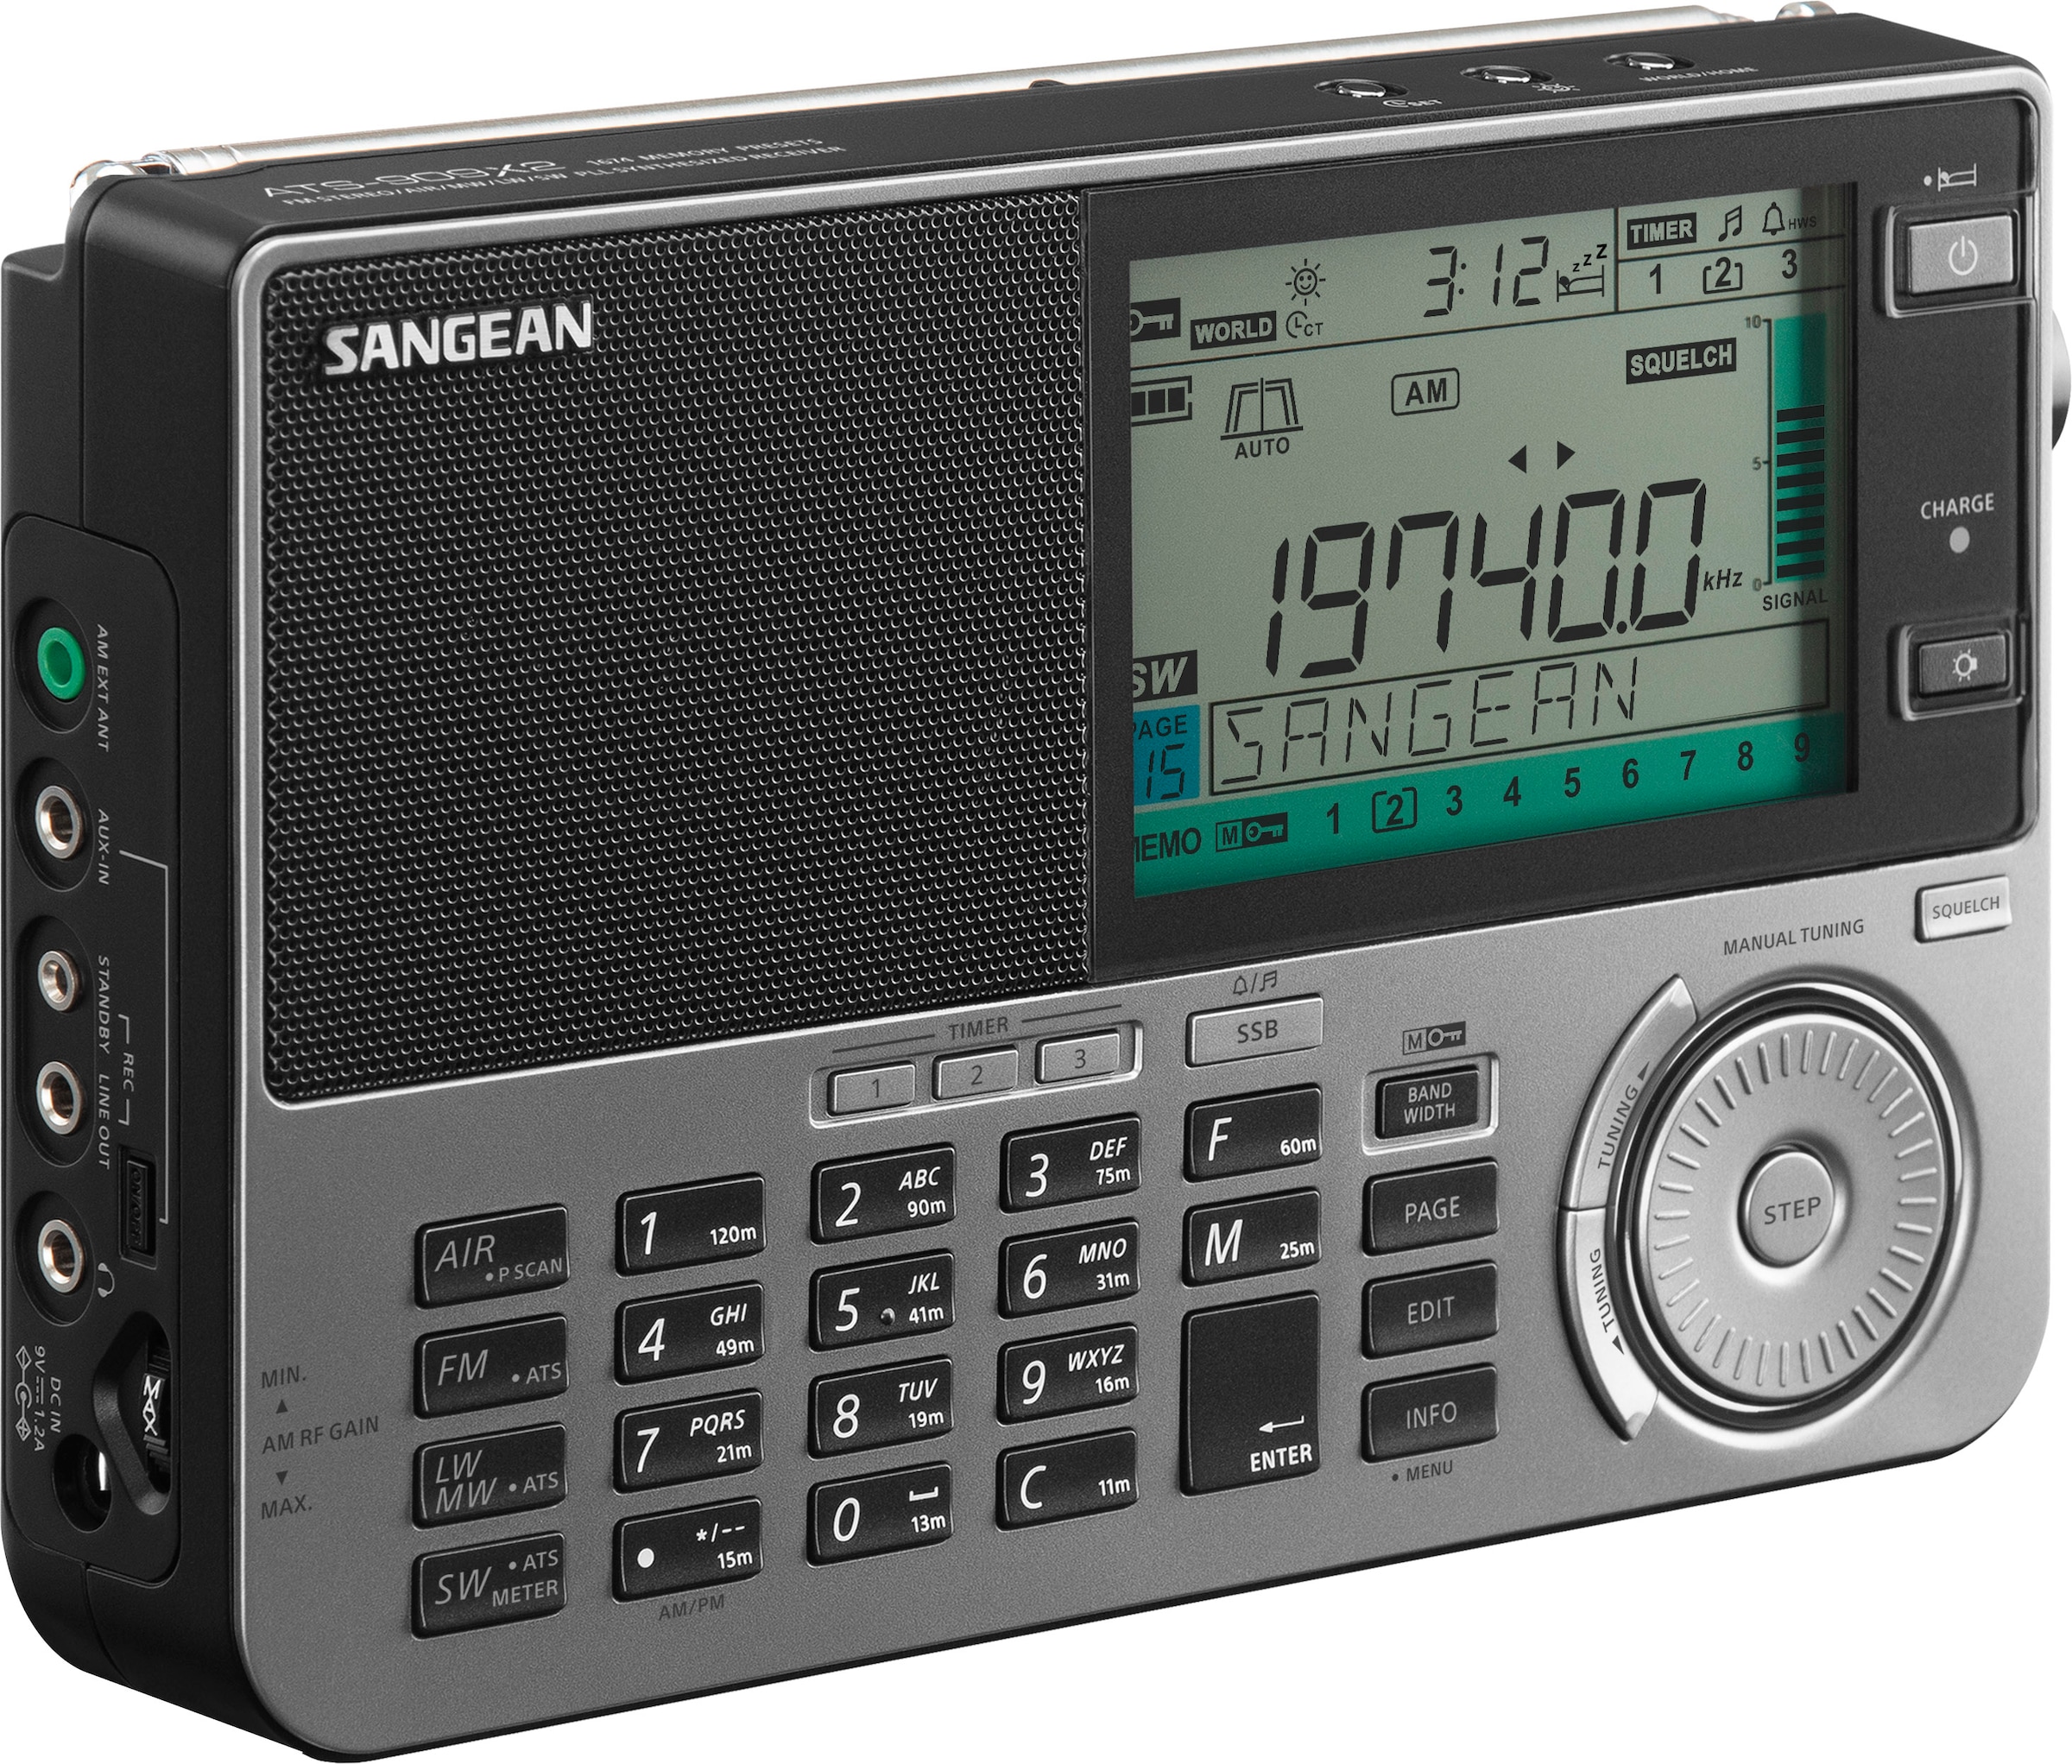 Sangean Weltempfänger »ATS-909 X2«, (FM-Tuner mit RDS-AM-Tuner), Große LC-Anzeige, Lautsprecher